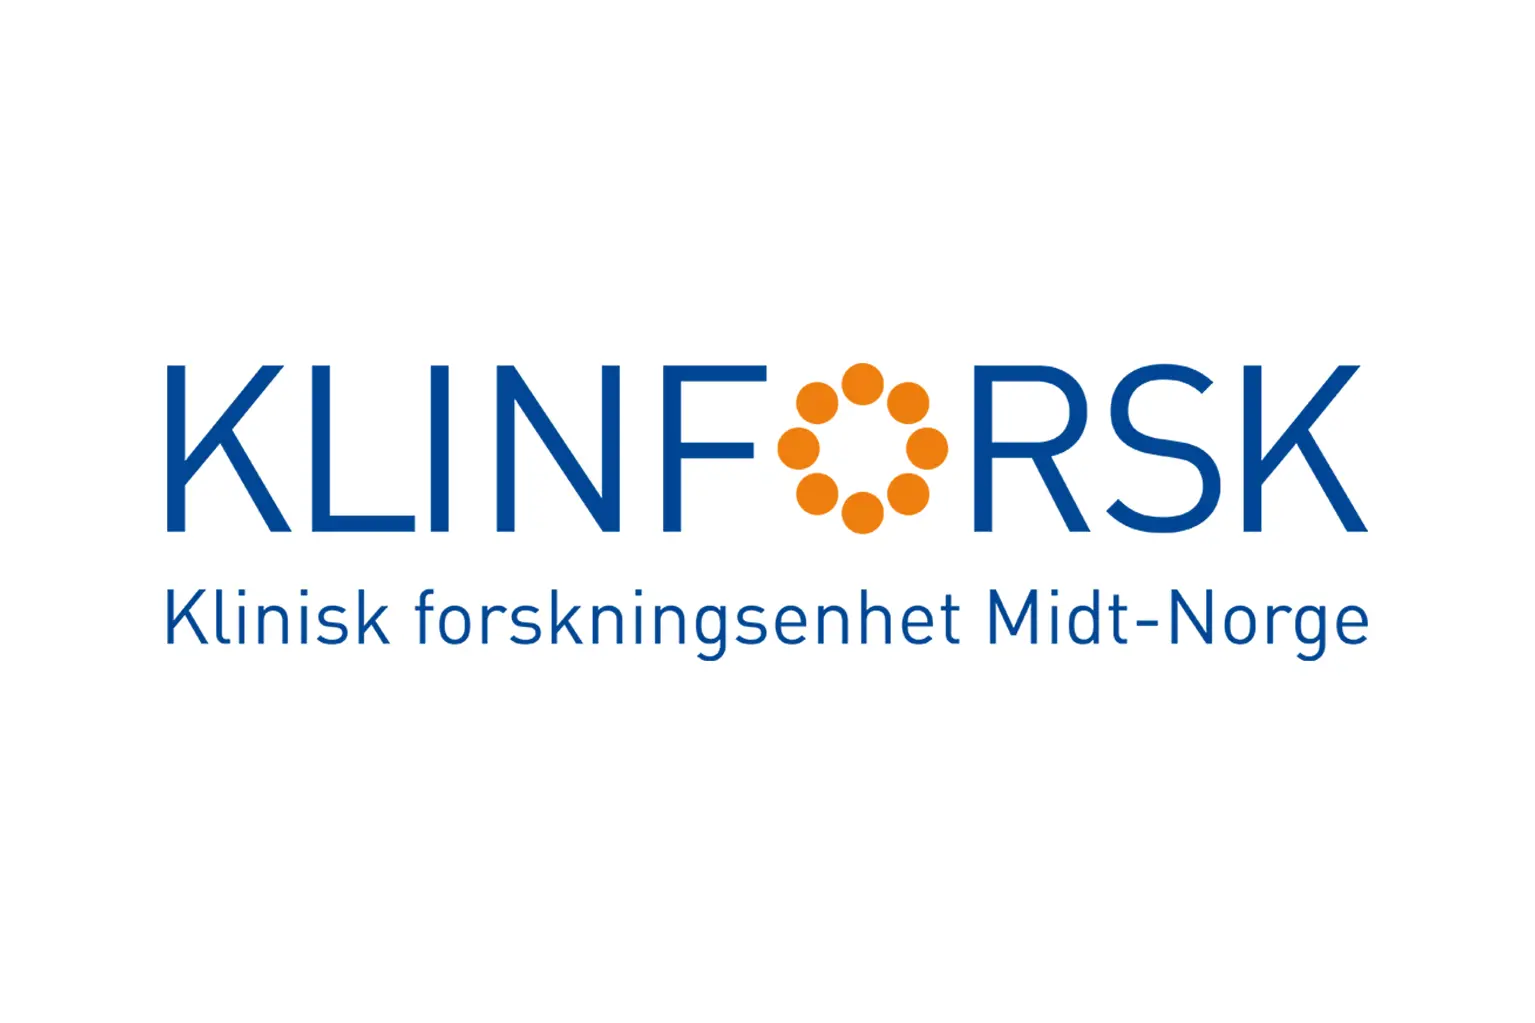 Klinforsk.logo